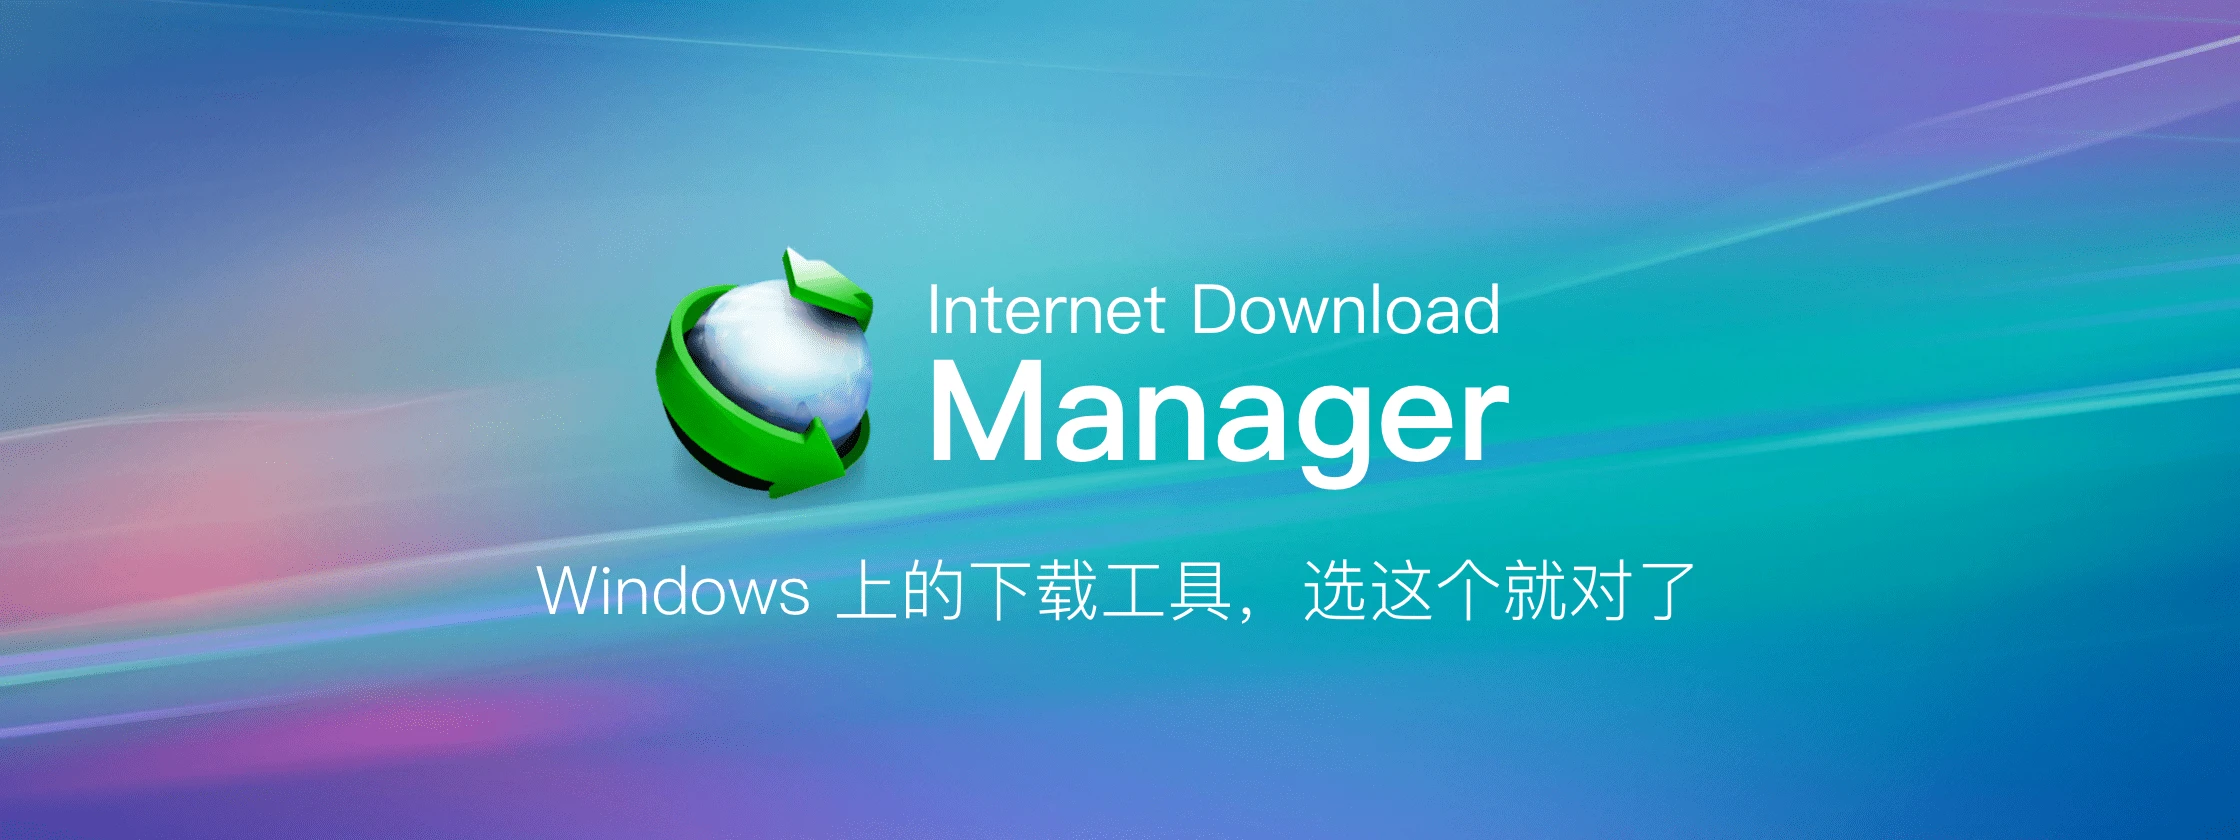 下载神器：Internet Download Manager 6.42.3 绿色特别版 (IDM)